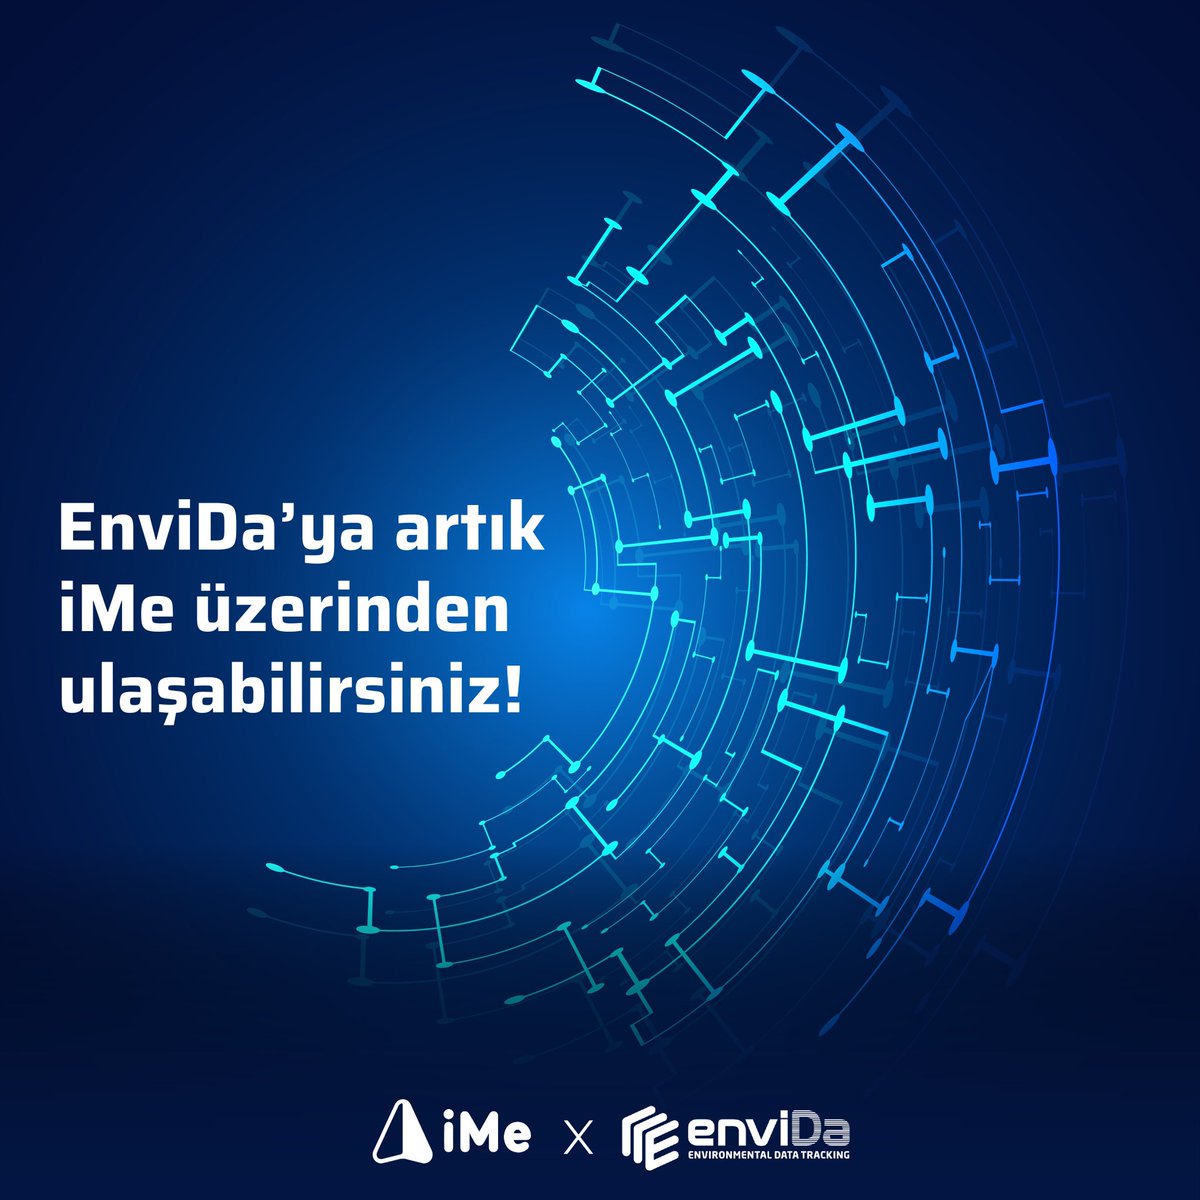 Sayın EnviDa Yatırımcıları,

Sizi bilgilendirmek isteriz ki artık bize 'iMe' uygulaması üzerinden ulaşabilirsiniz. Peki, 'iMe' nedir? Hem bir Mesajlaşma uygulaması hem de Kripto Cüzdanı olarak bir araya getirilmiştir.